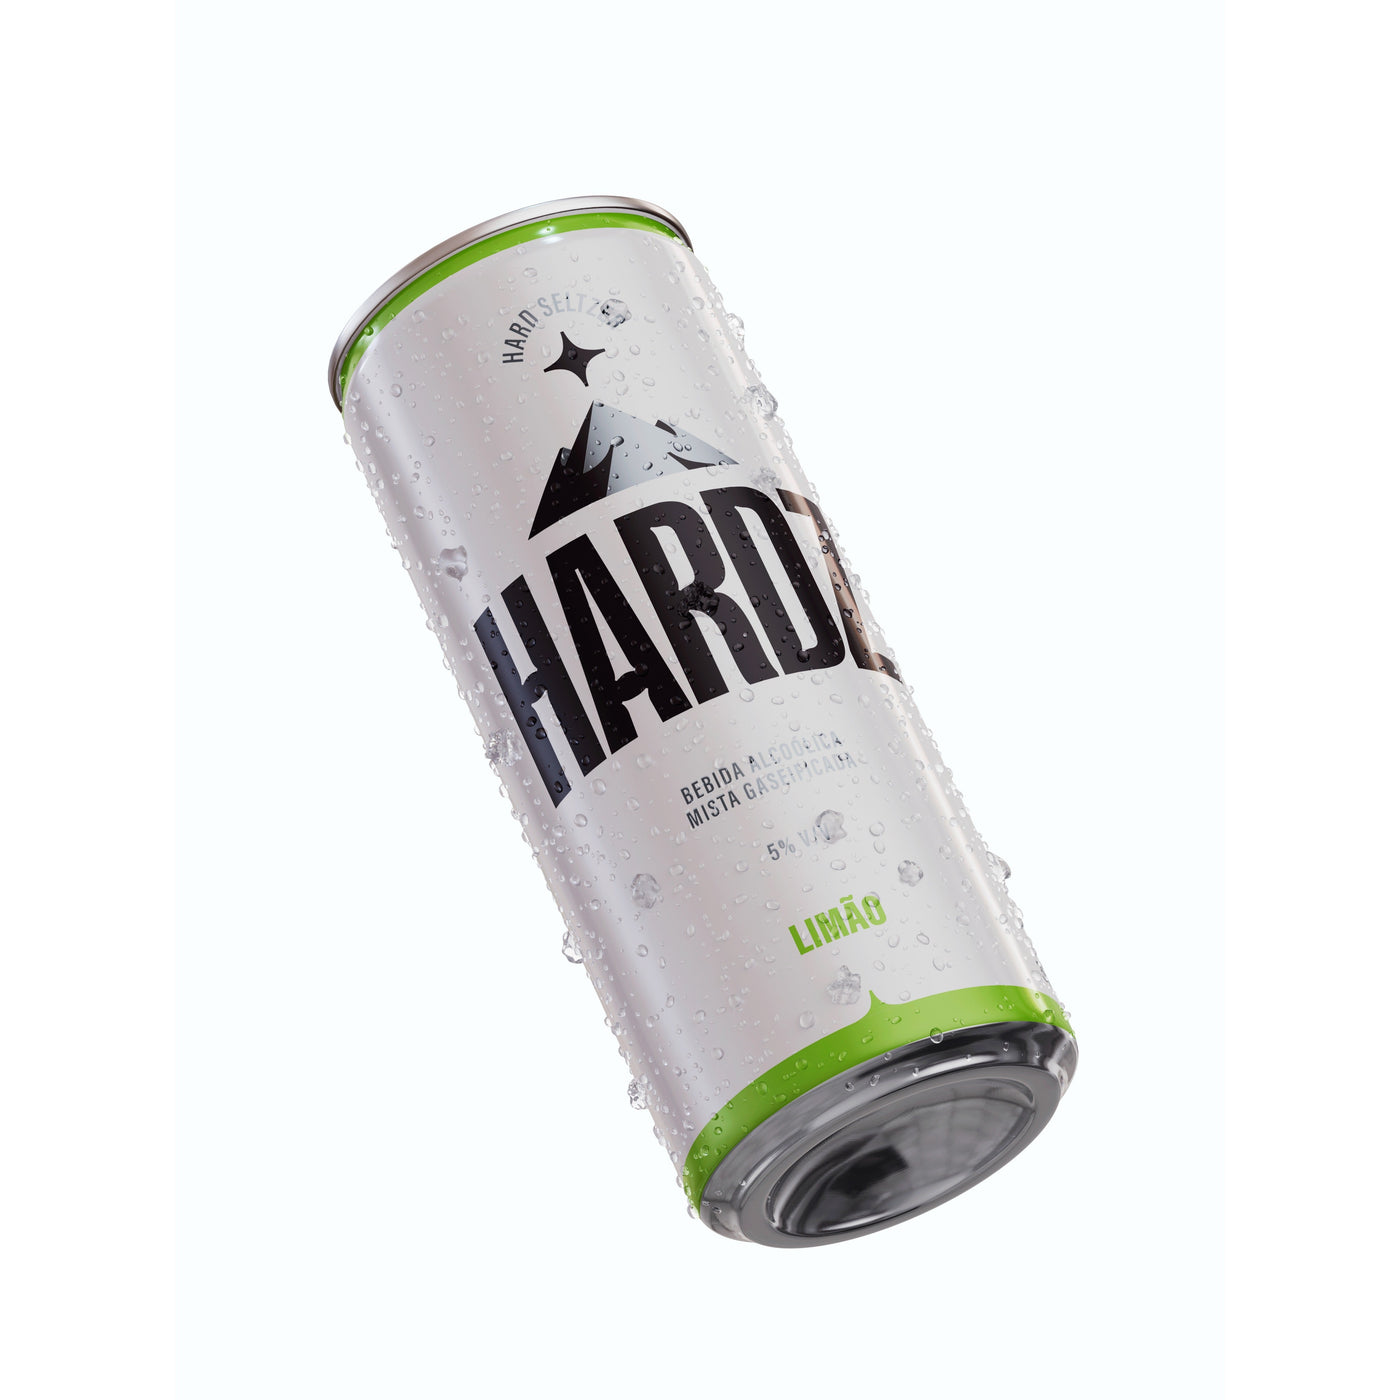 Hardz Limão - 12 Latas 355mL